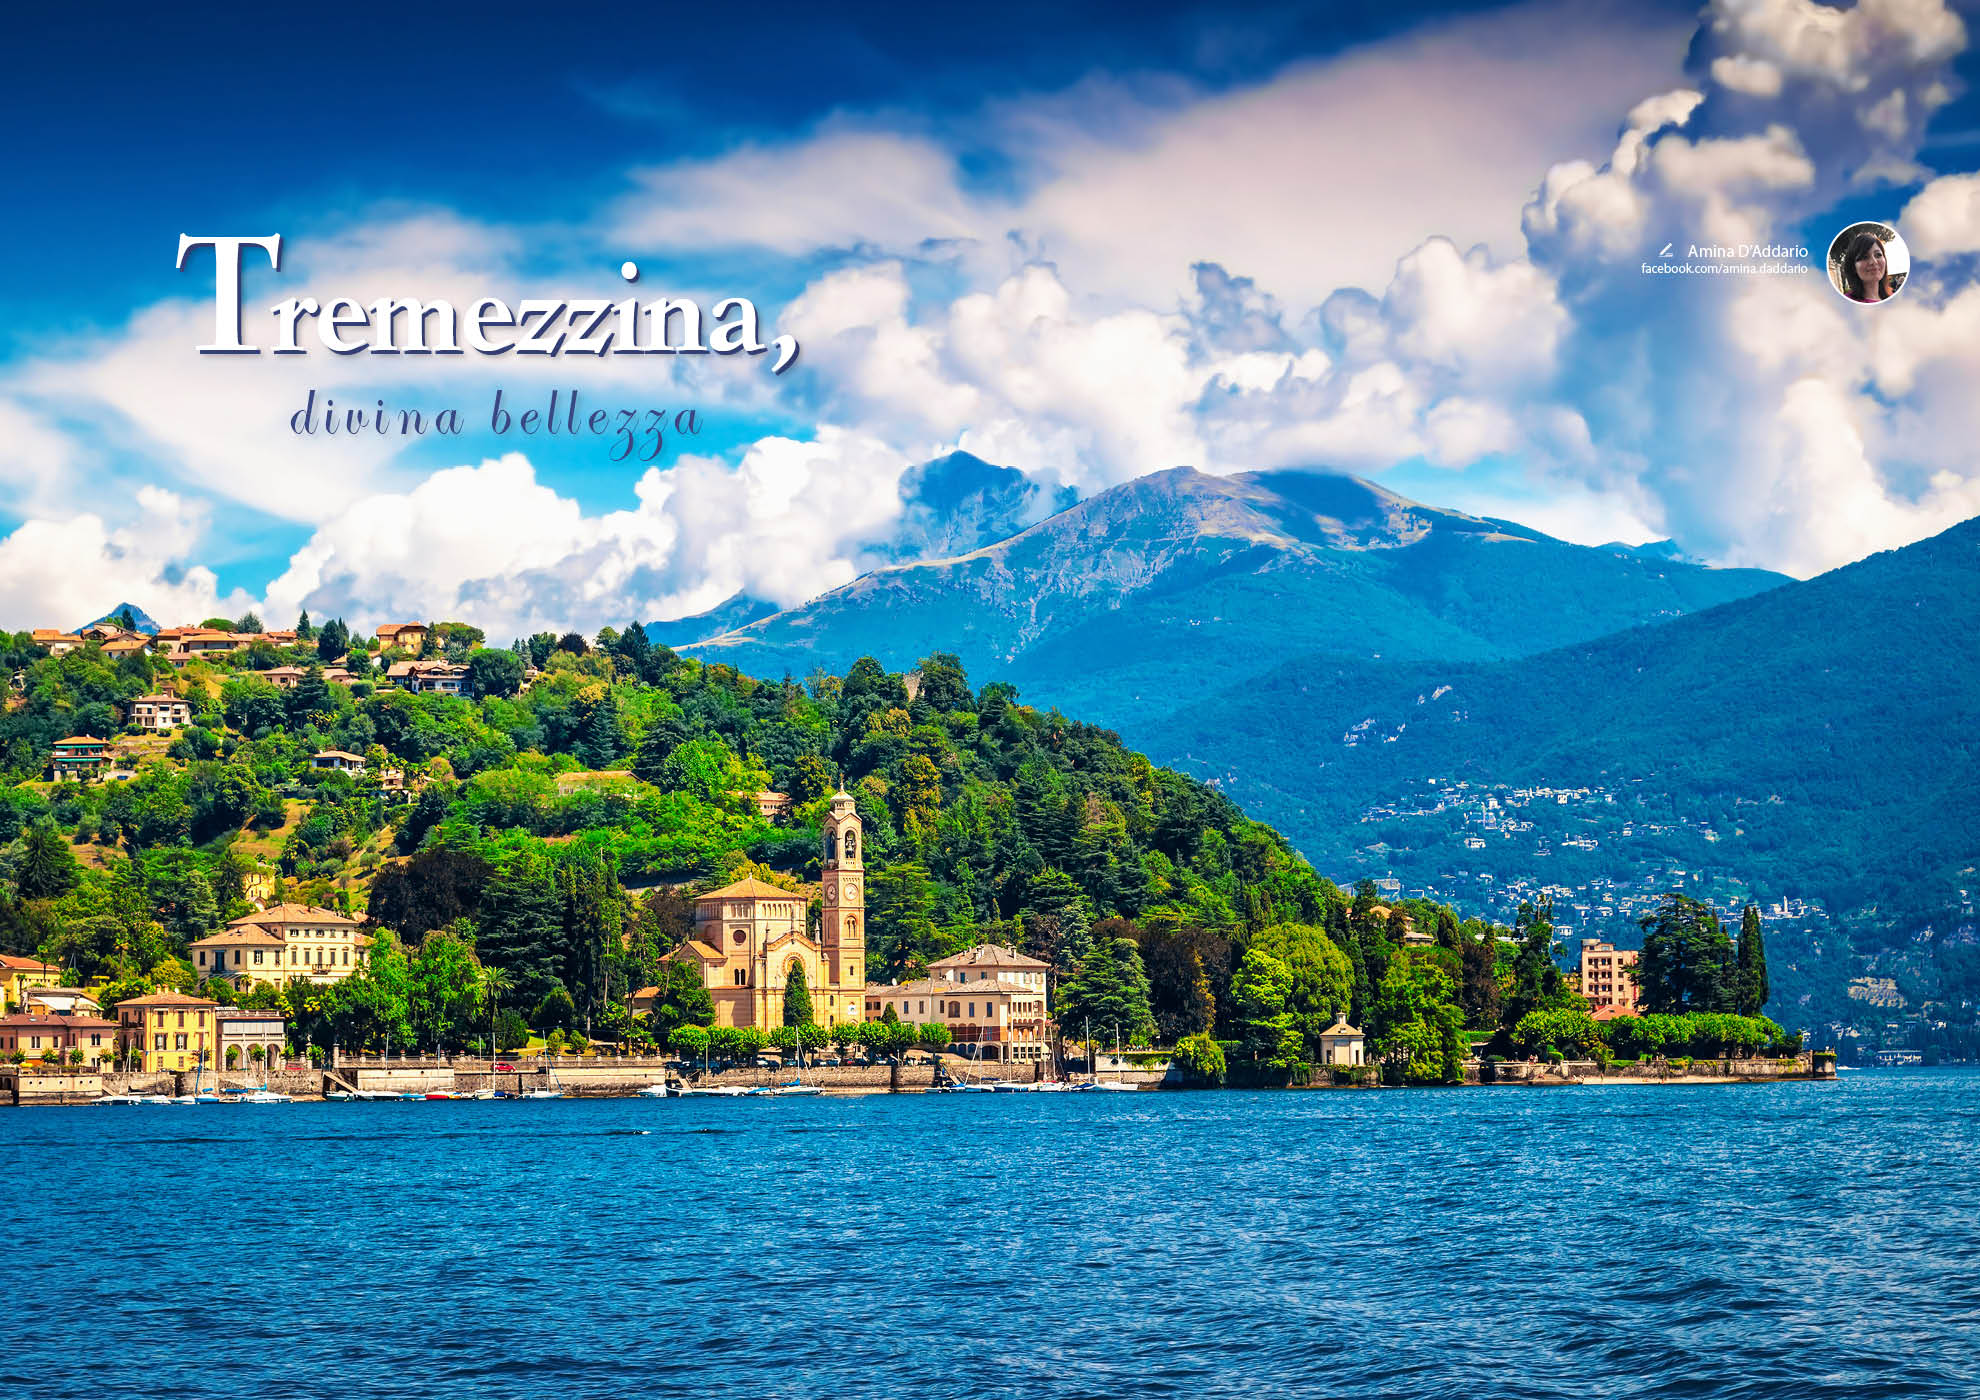 e-borghi travel 24: Speciale borghi lariani - Tremezzina, divina bellezza